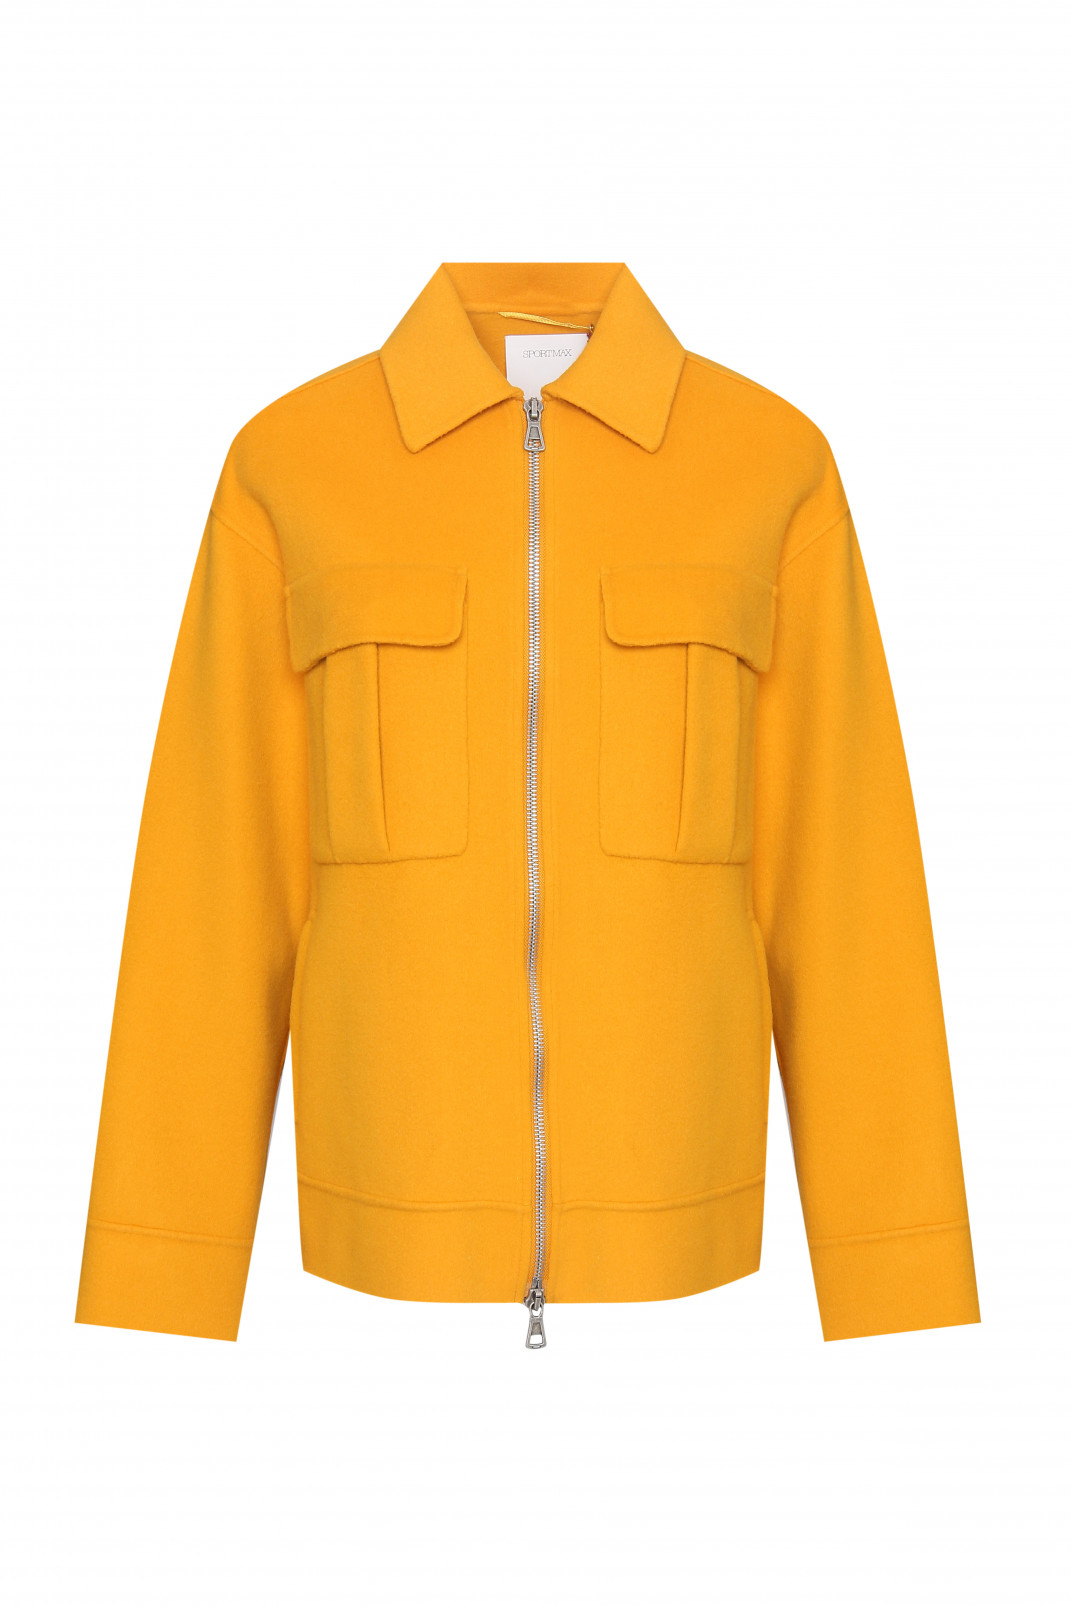 Пальто из шерсти с накладными карманами на молнии Sportmax  –  Общий вид  – Цвет:  Желтый